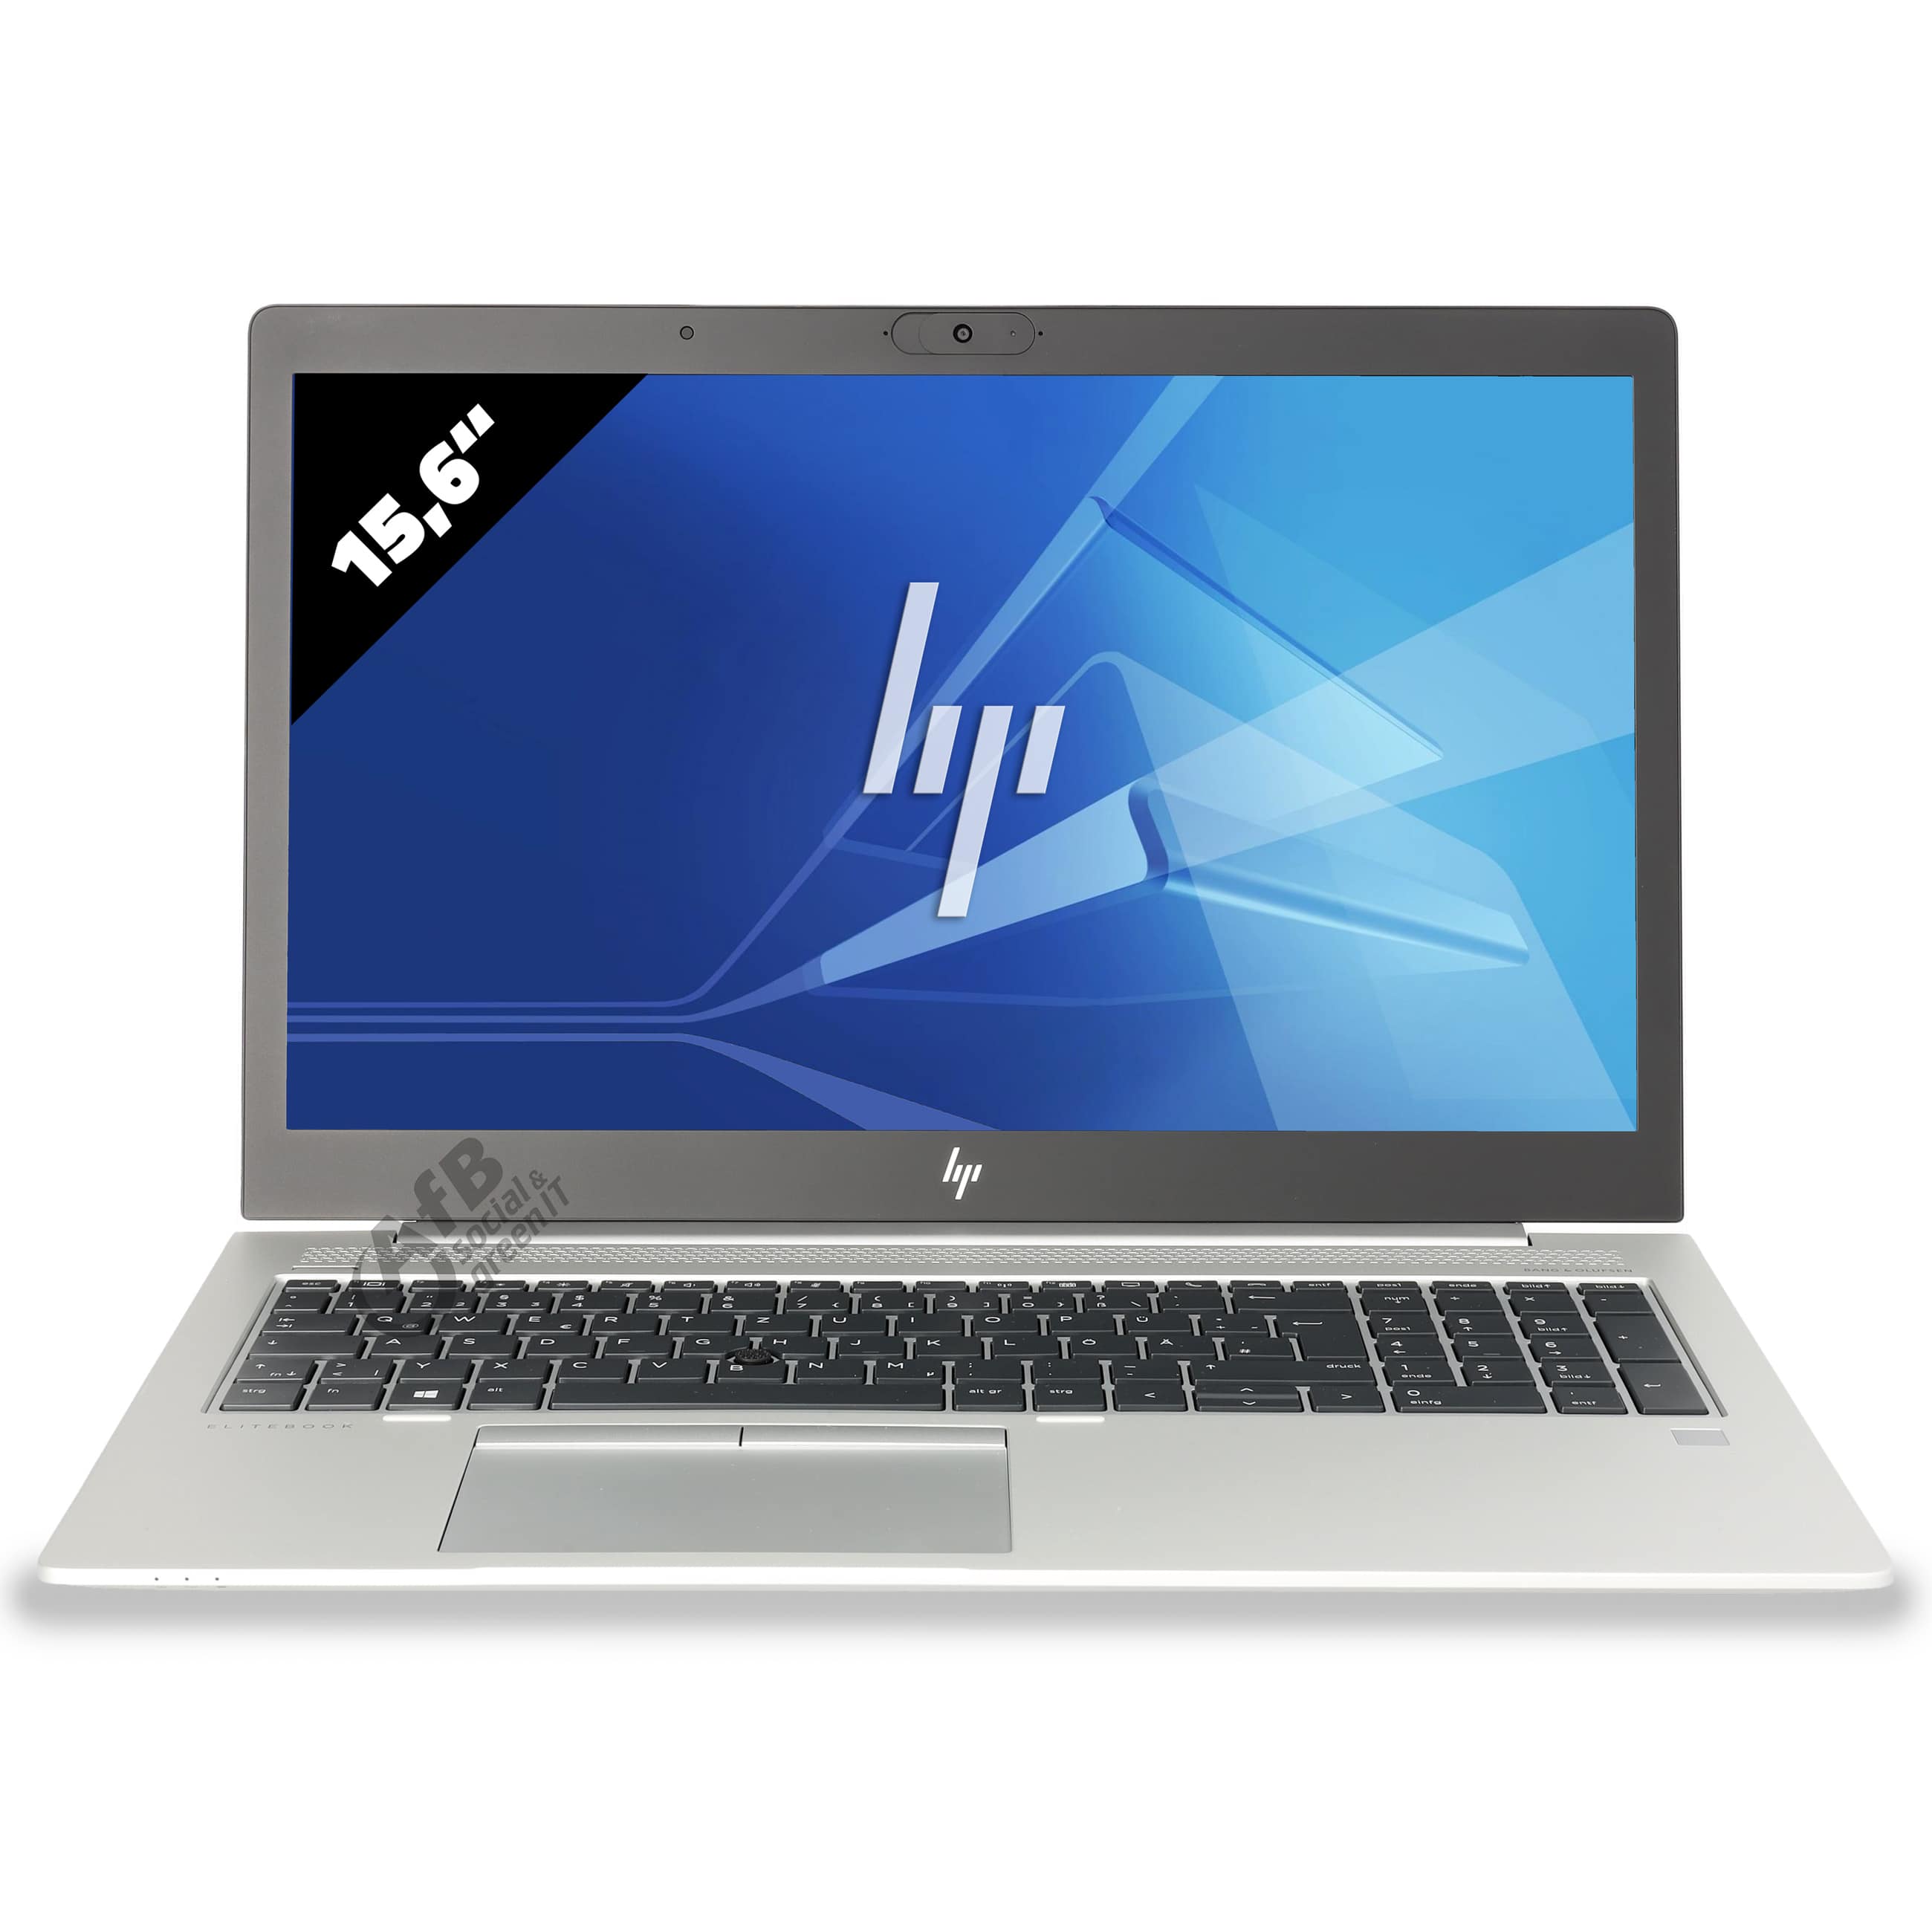 HP EliteBook 755 G5